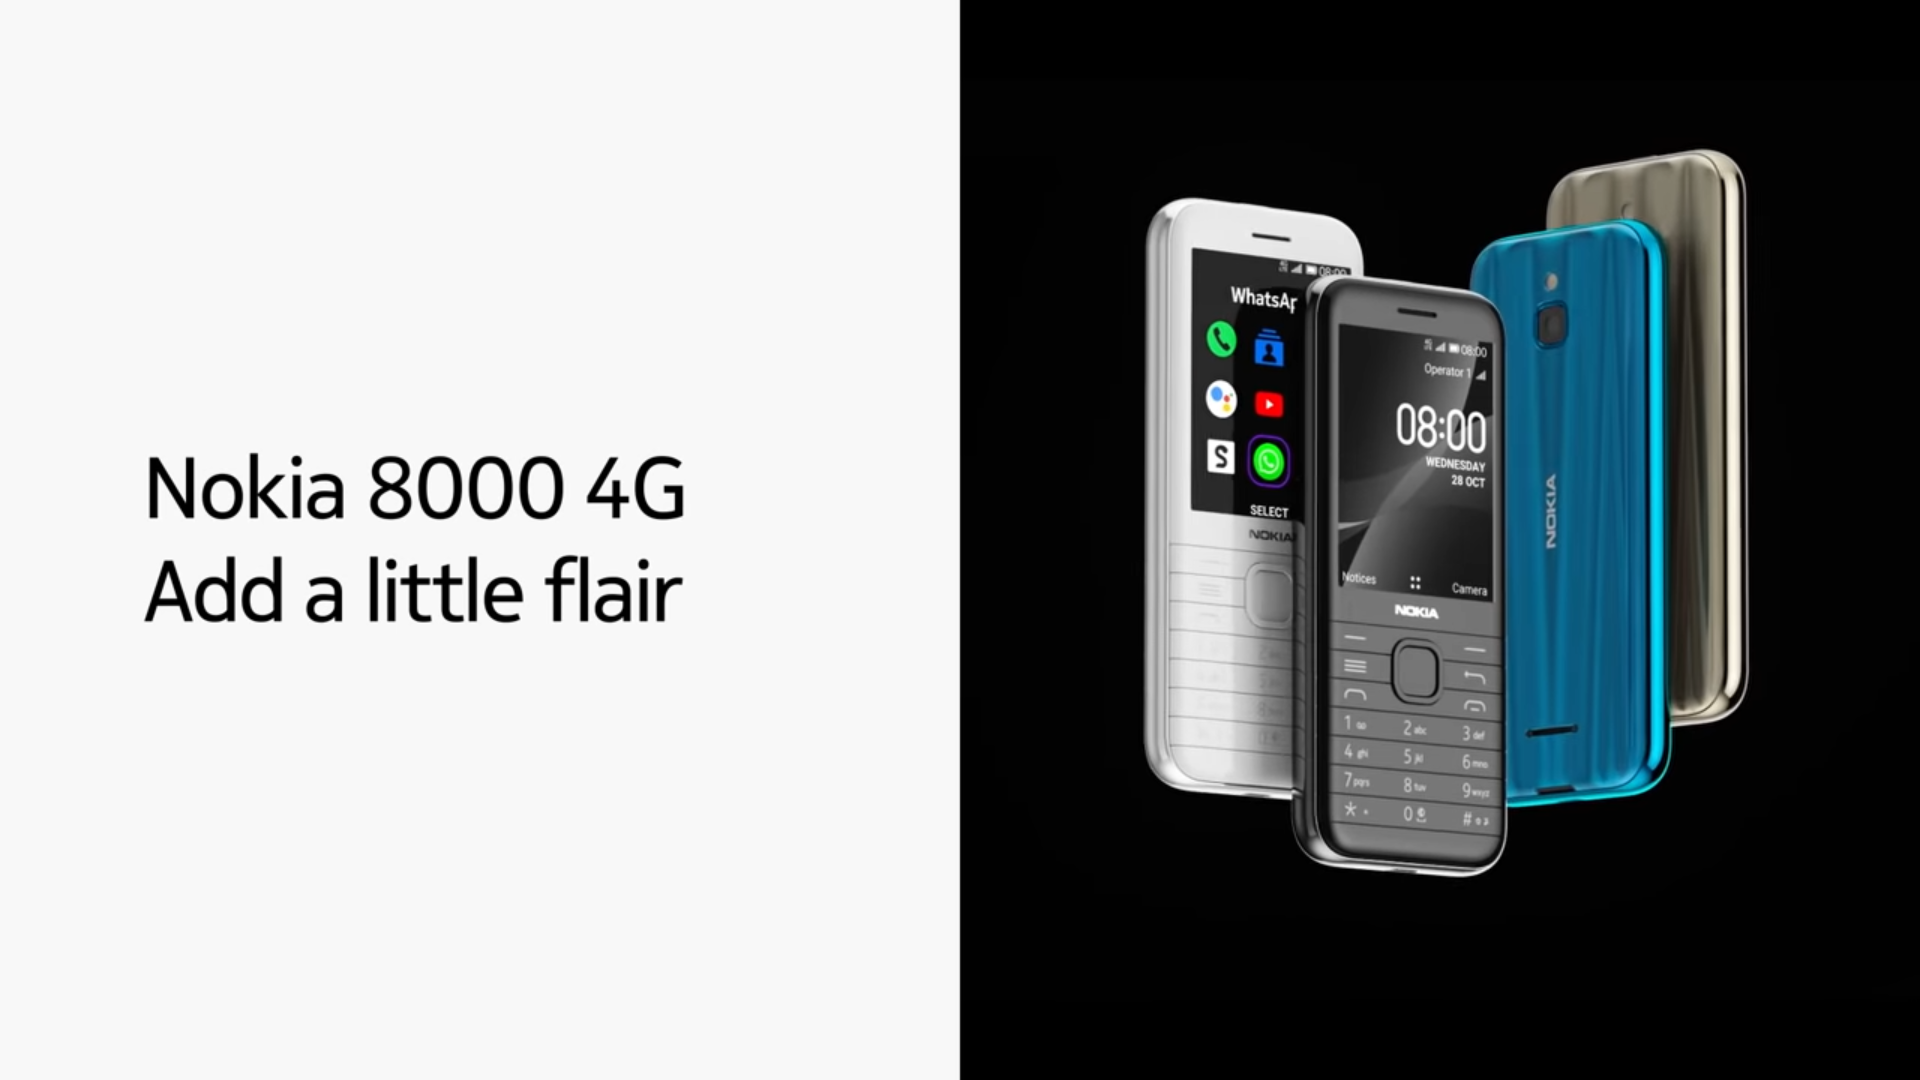 Nokia 8000 4G, Nokia 6300 4G With Snapdragon 210, KaiOS Go